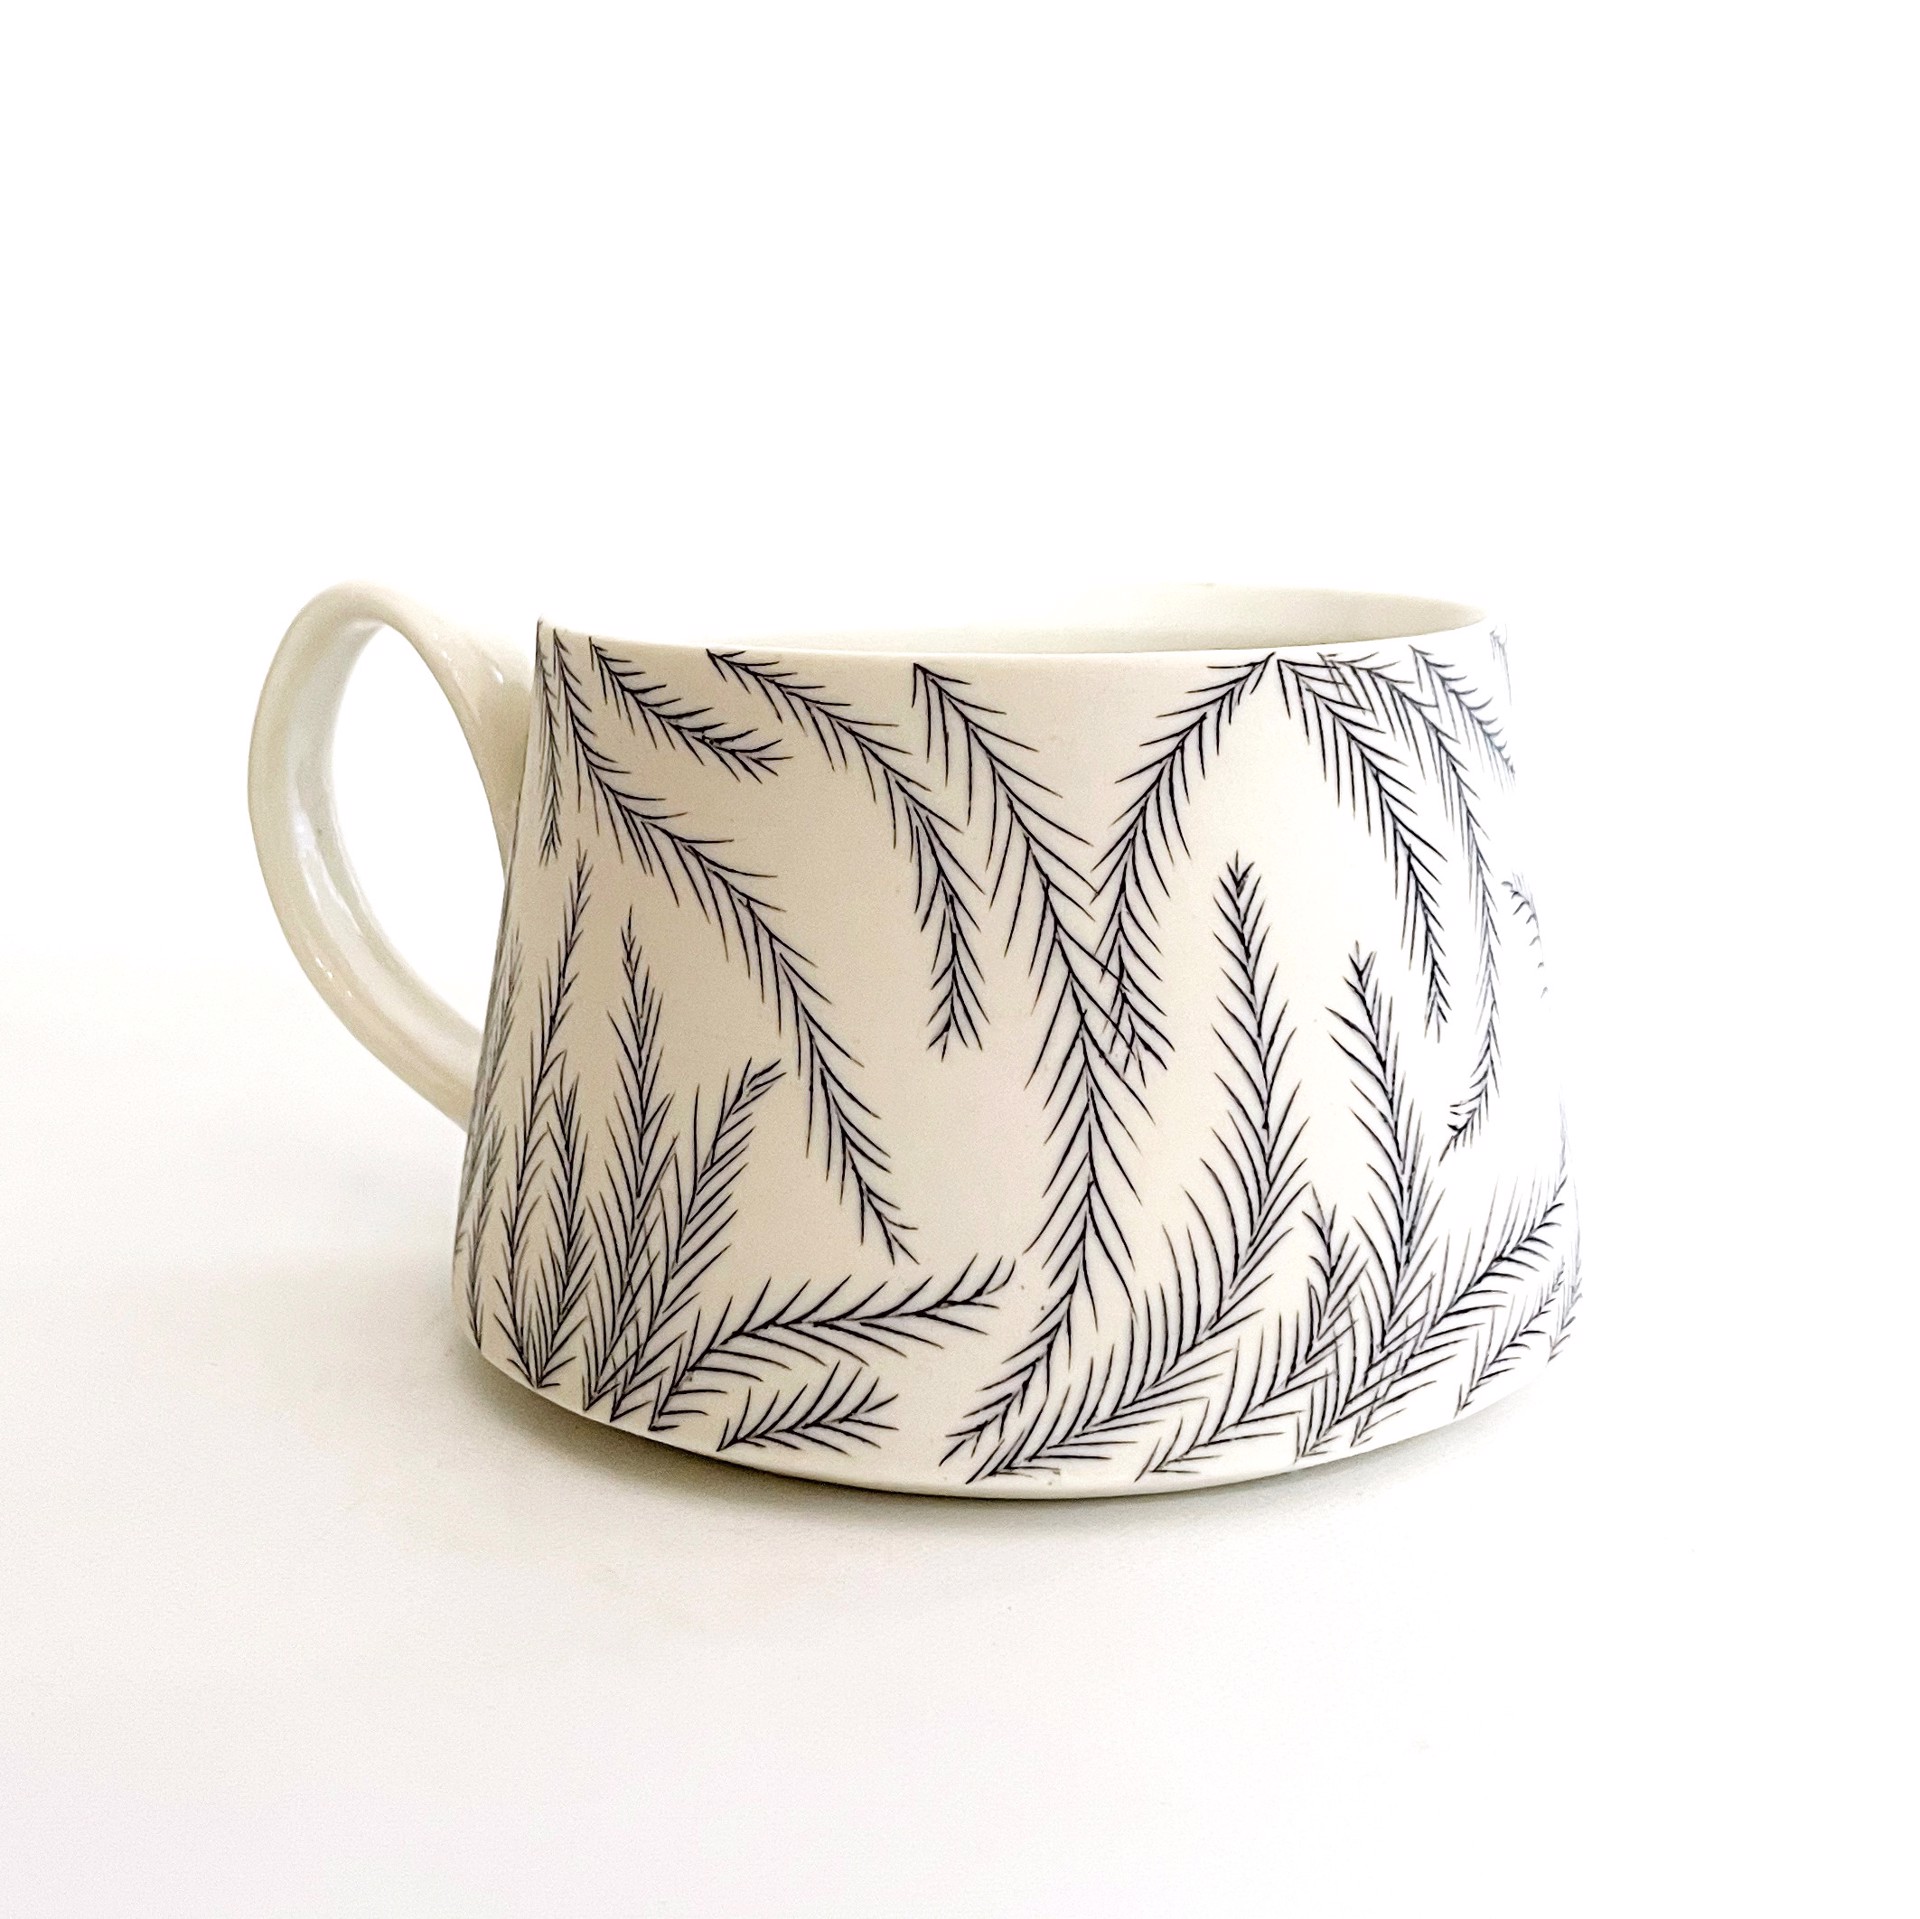 Feathers Mug by Bianka Groves